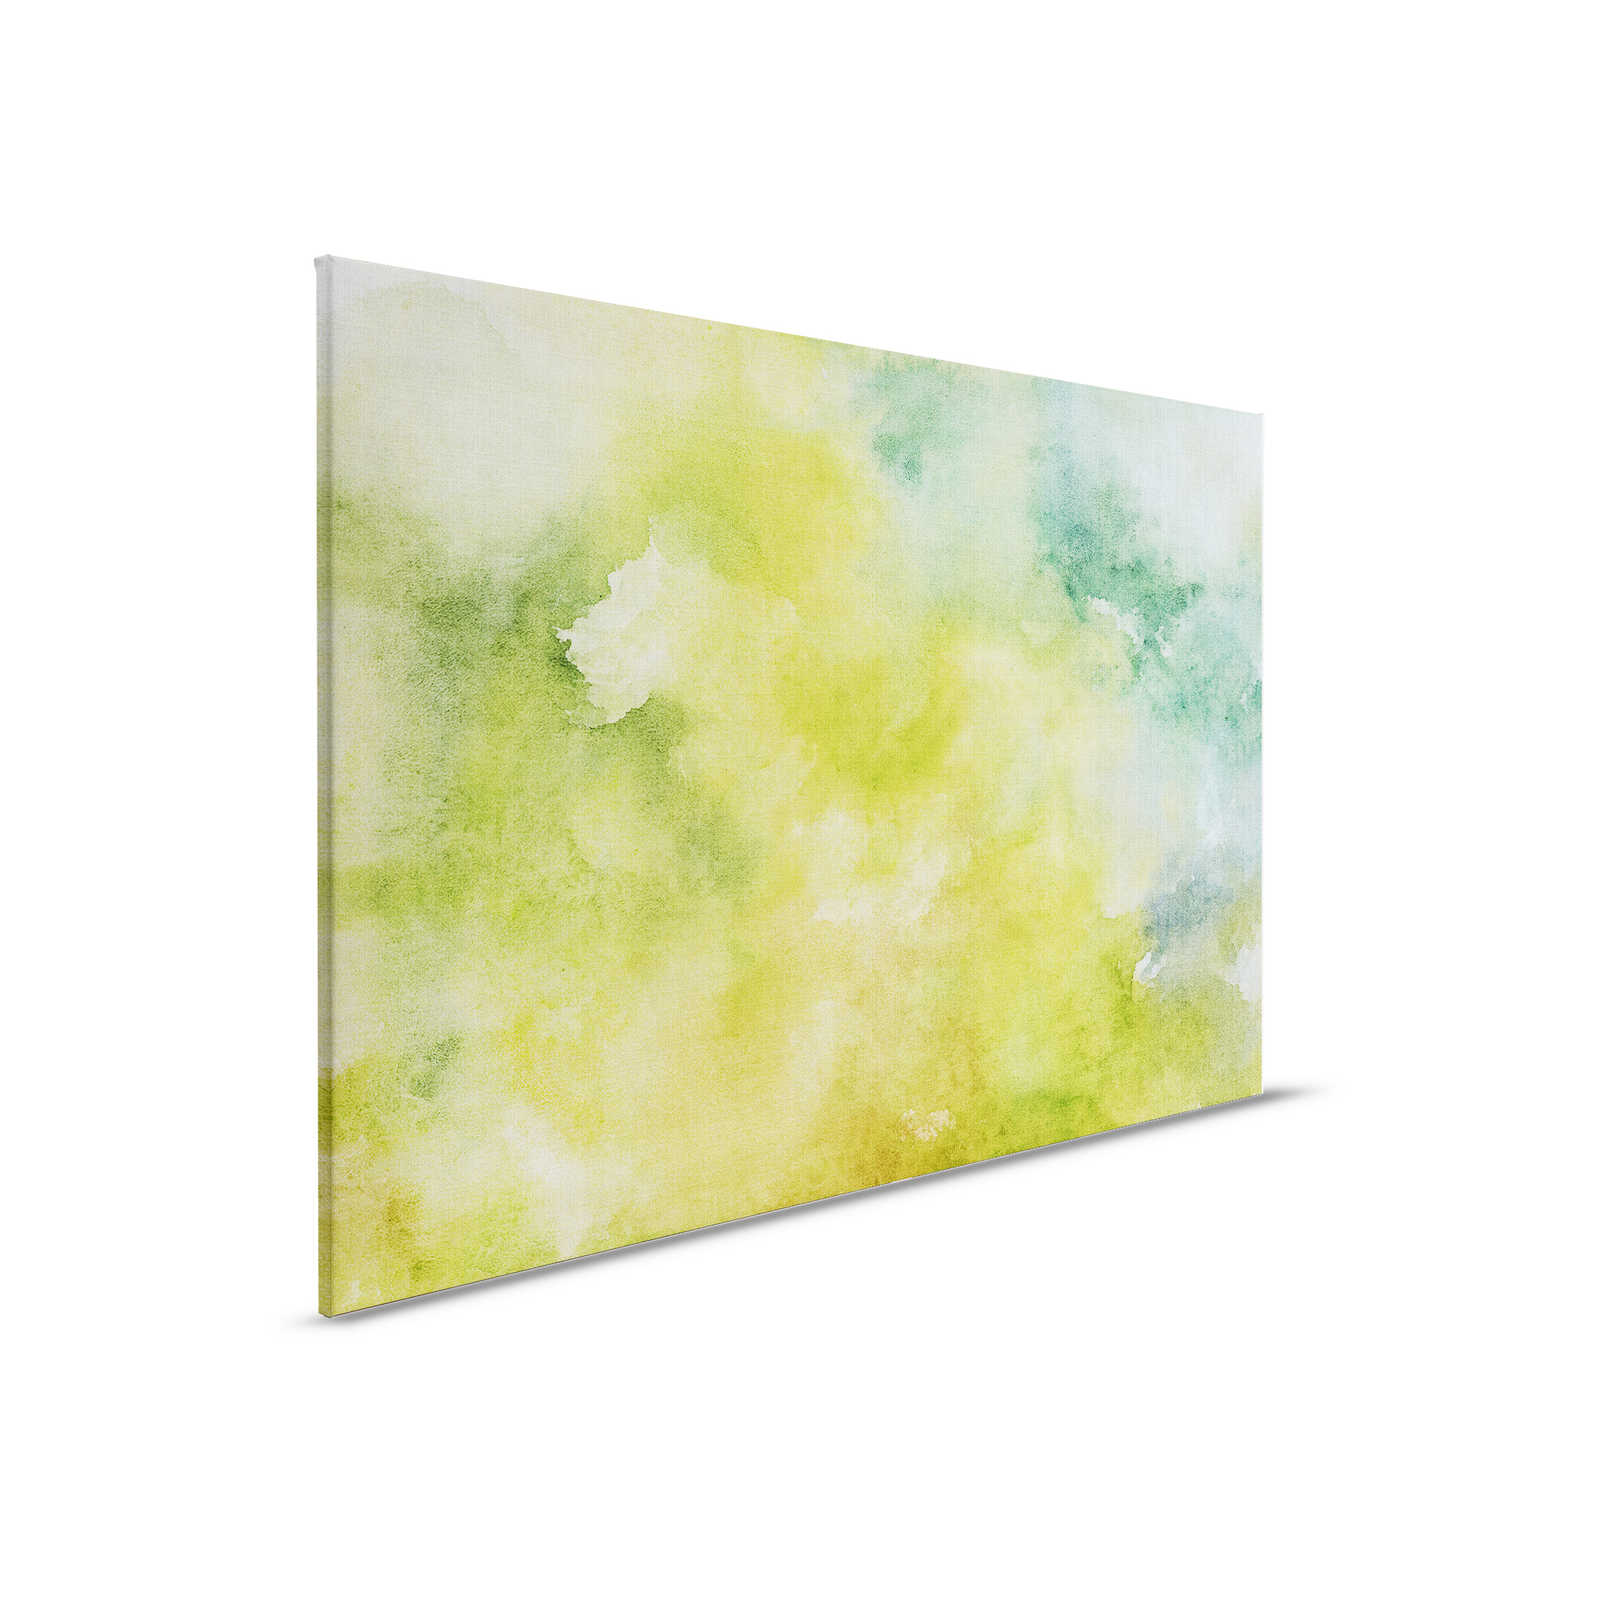 Acuarelas 3 - Motivo de acuarela verde como cuadro en lienzo con aspecto de lino natural - 0,90 m x 0,60 m
